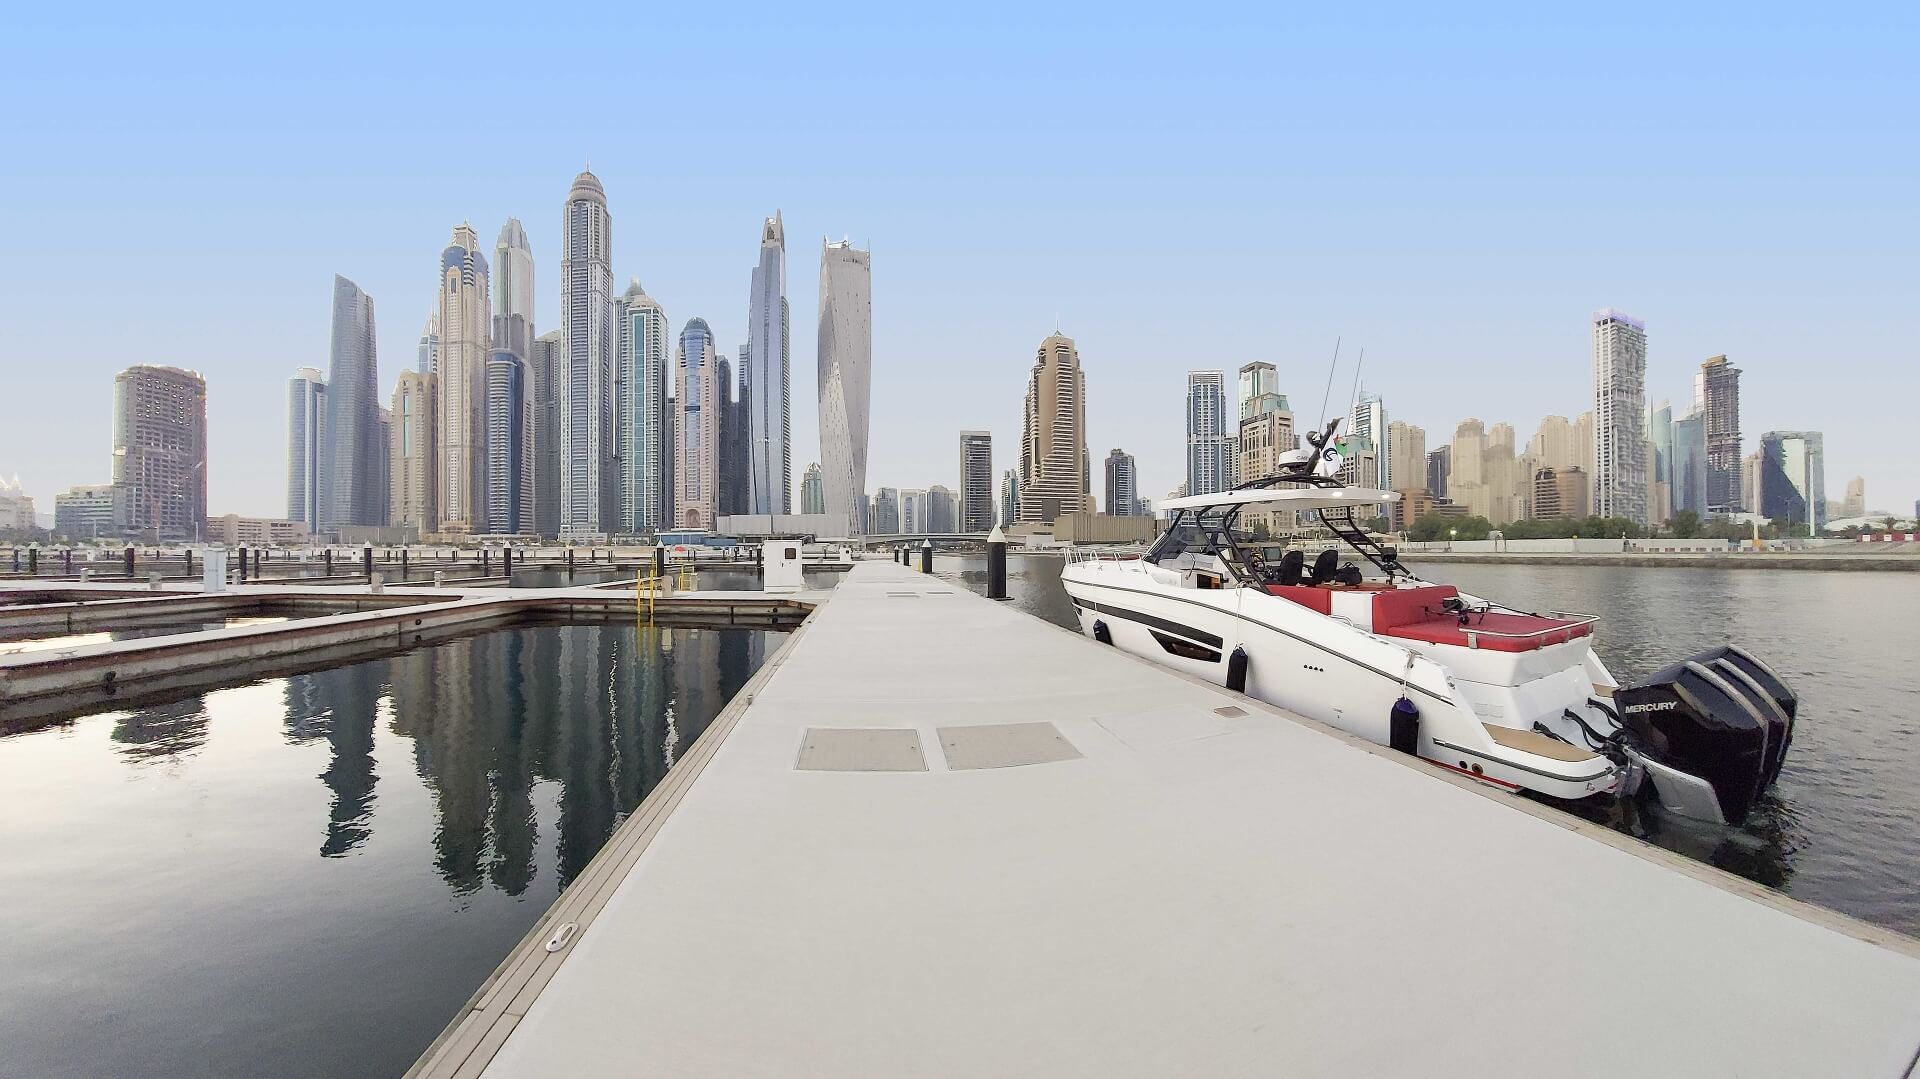 Дубайская гавань (Dubai Harbour) - 4